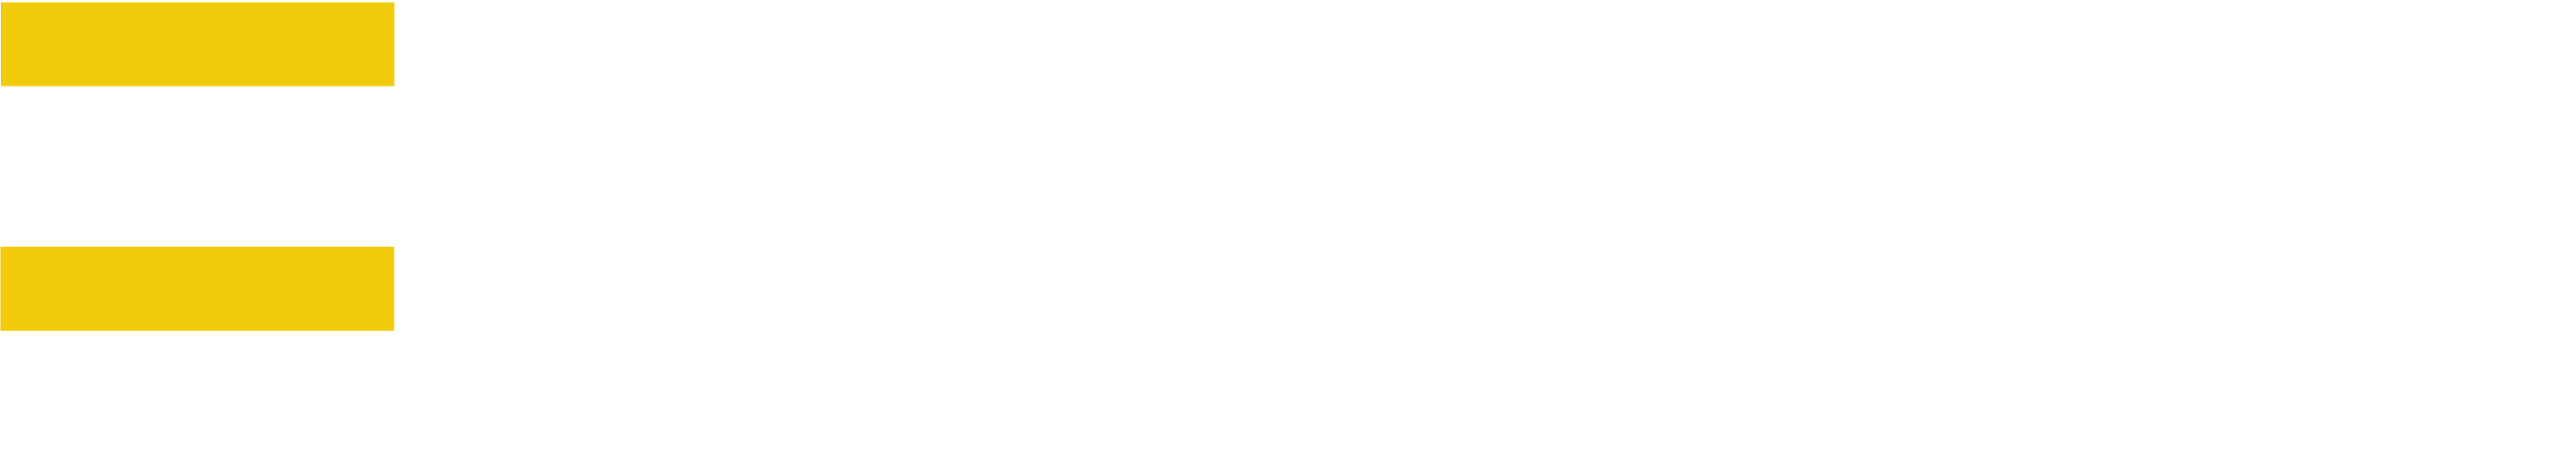 logo-fullstack-white